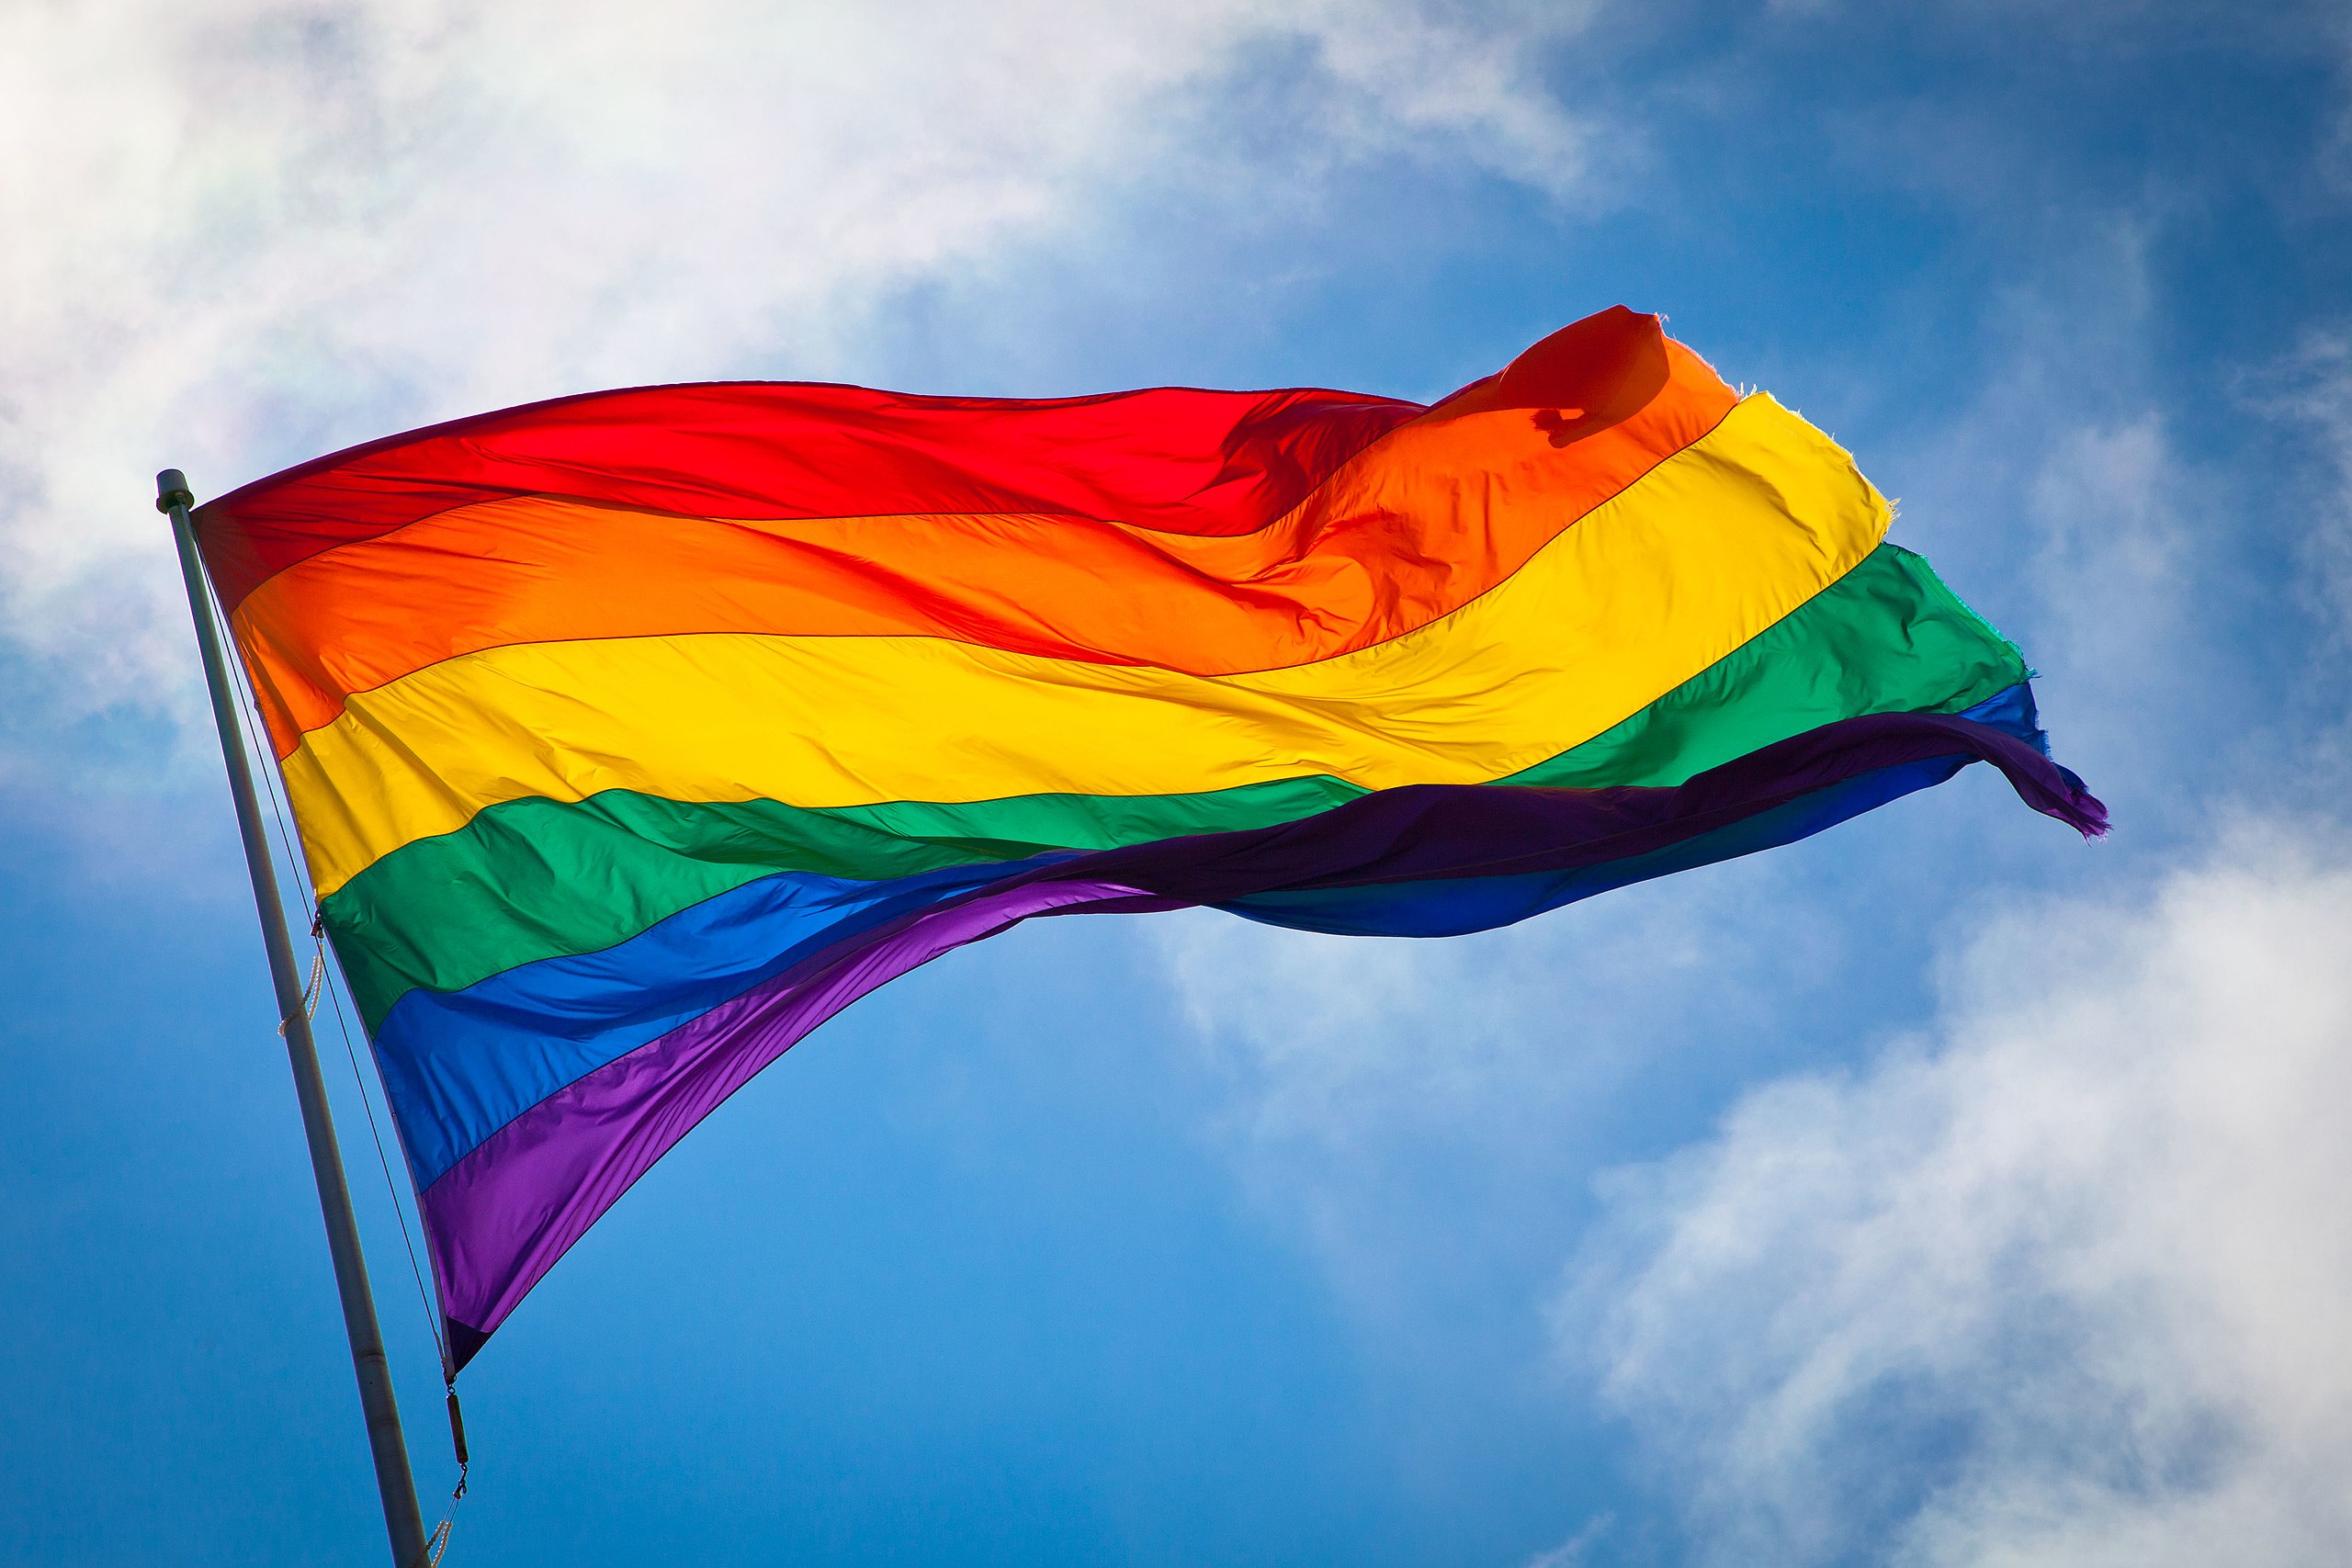 Hình lá cờ LGBT trong tay bạn đang giữ biểu tượng của sự tự do và quyền lợi và bày tỏ lòng tôn kính với cộng đồng LGBT. Để trở thành người hiểu biết hơn về cộng đồng này, hãy xem hình ảnh trong trang hình này để học hỏi và giá trị tôn trọng sự đa dạng.